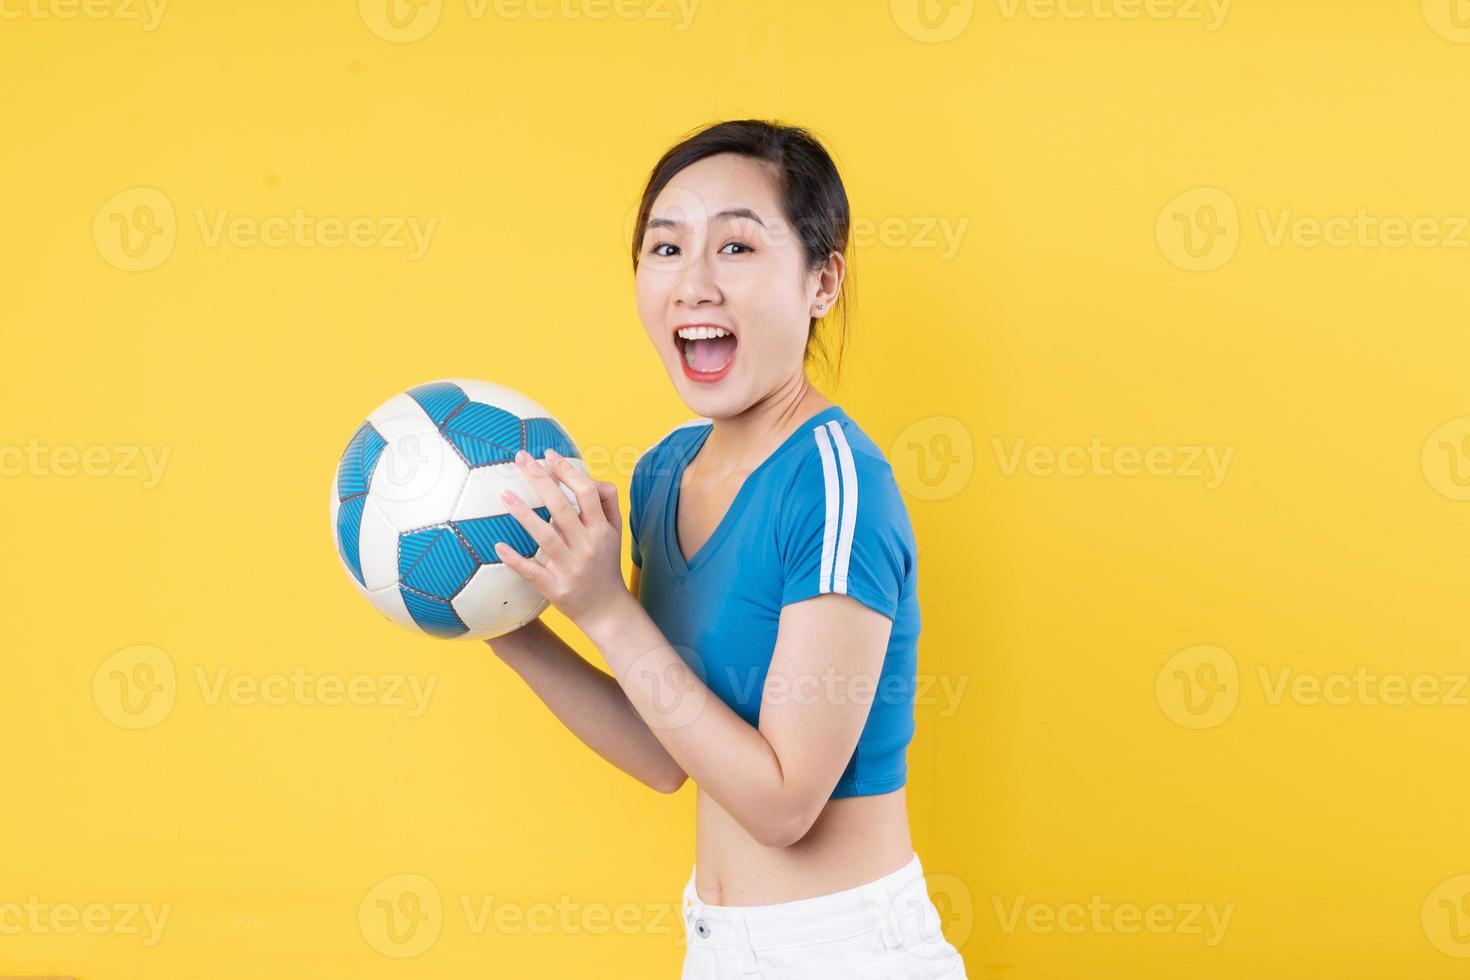 Ritratto di giovane ragazza dinamica che tiene la palla in mano isolata su sfondo giallo foto